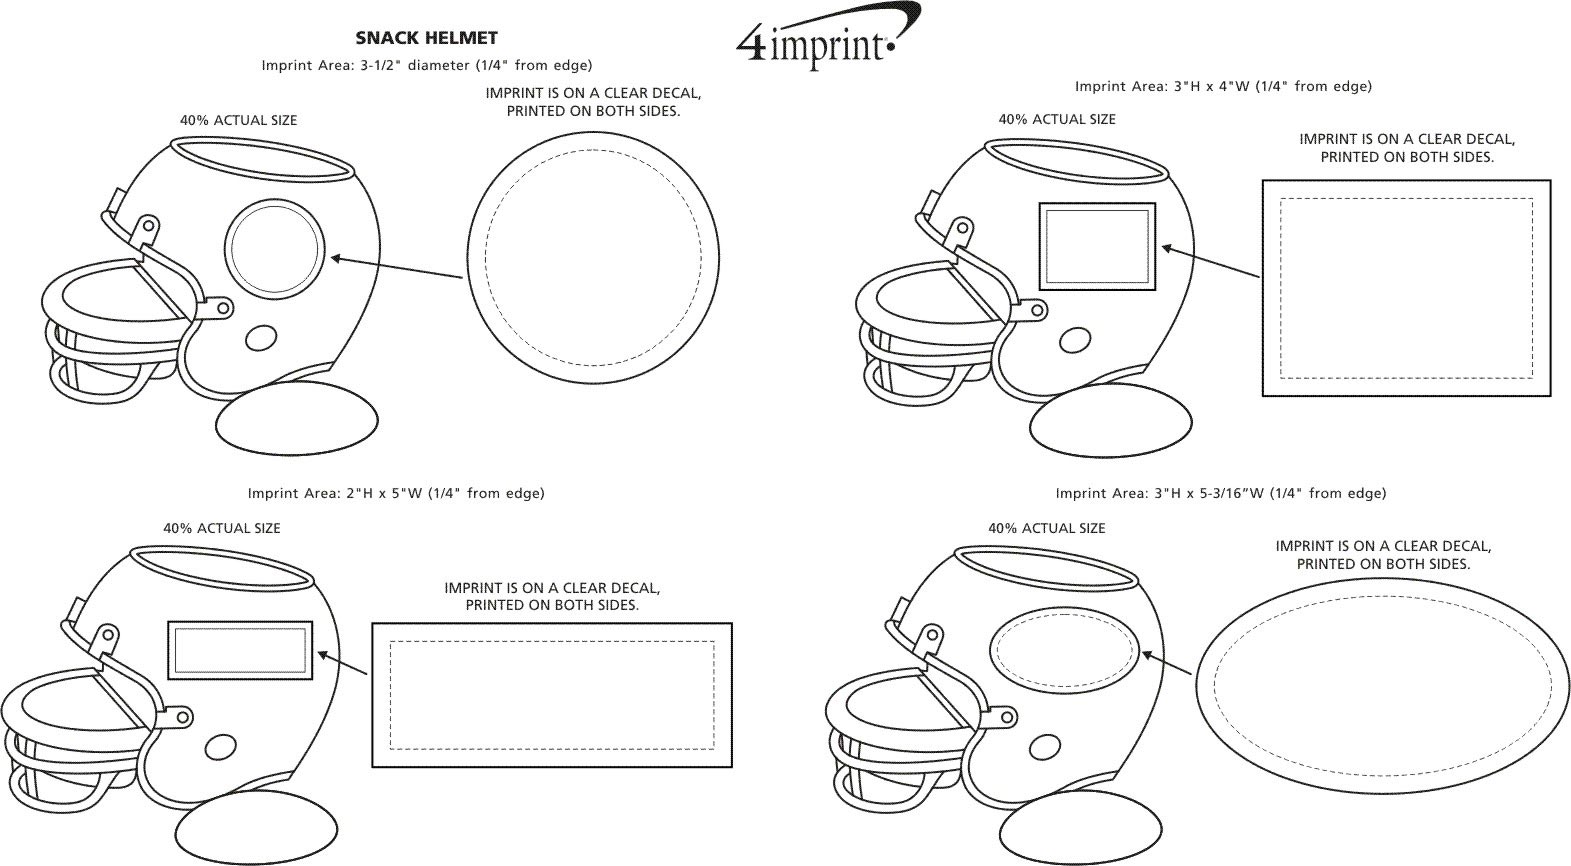 Imprint Area of Snack Helmet